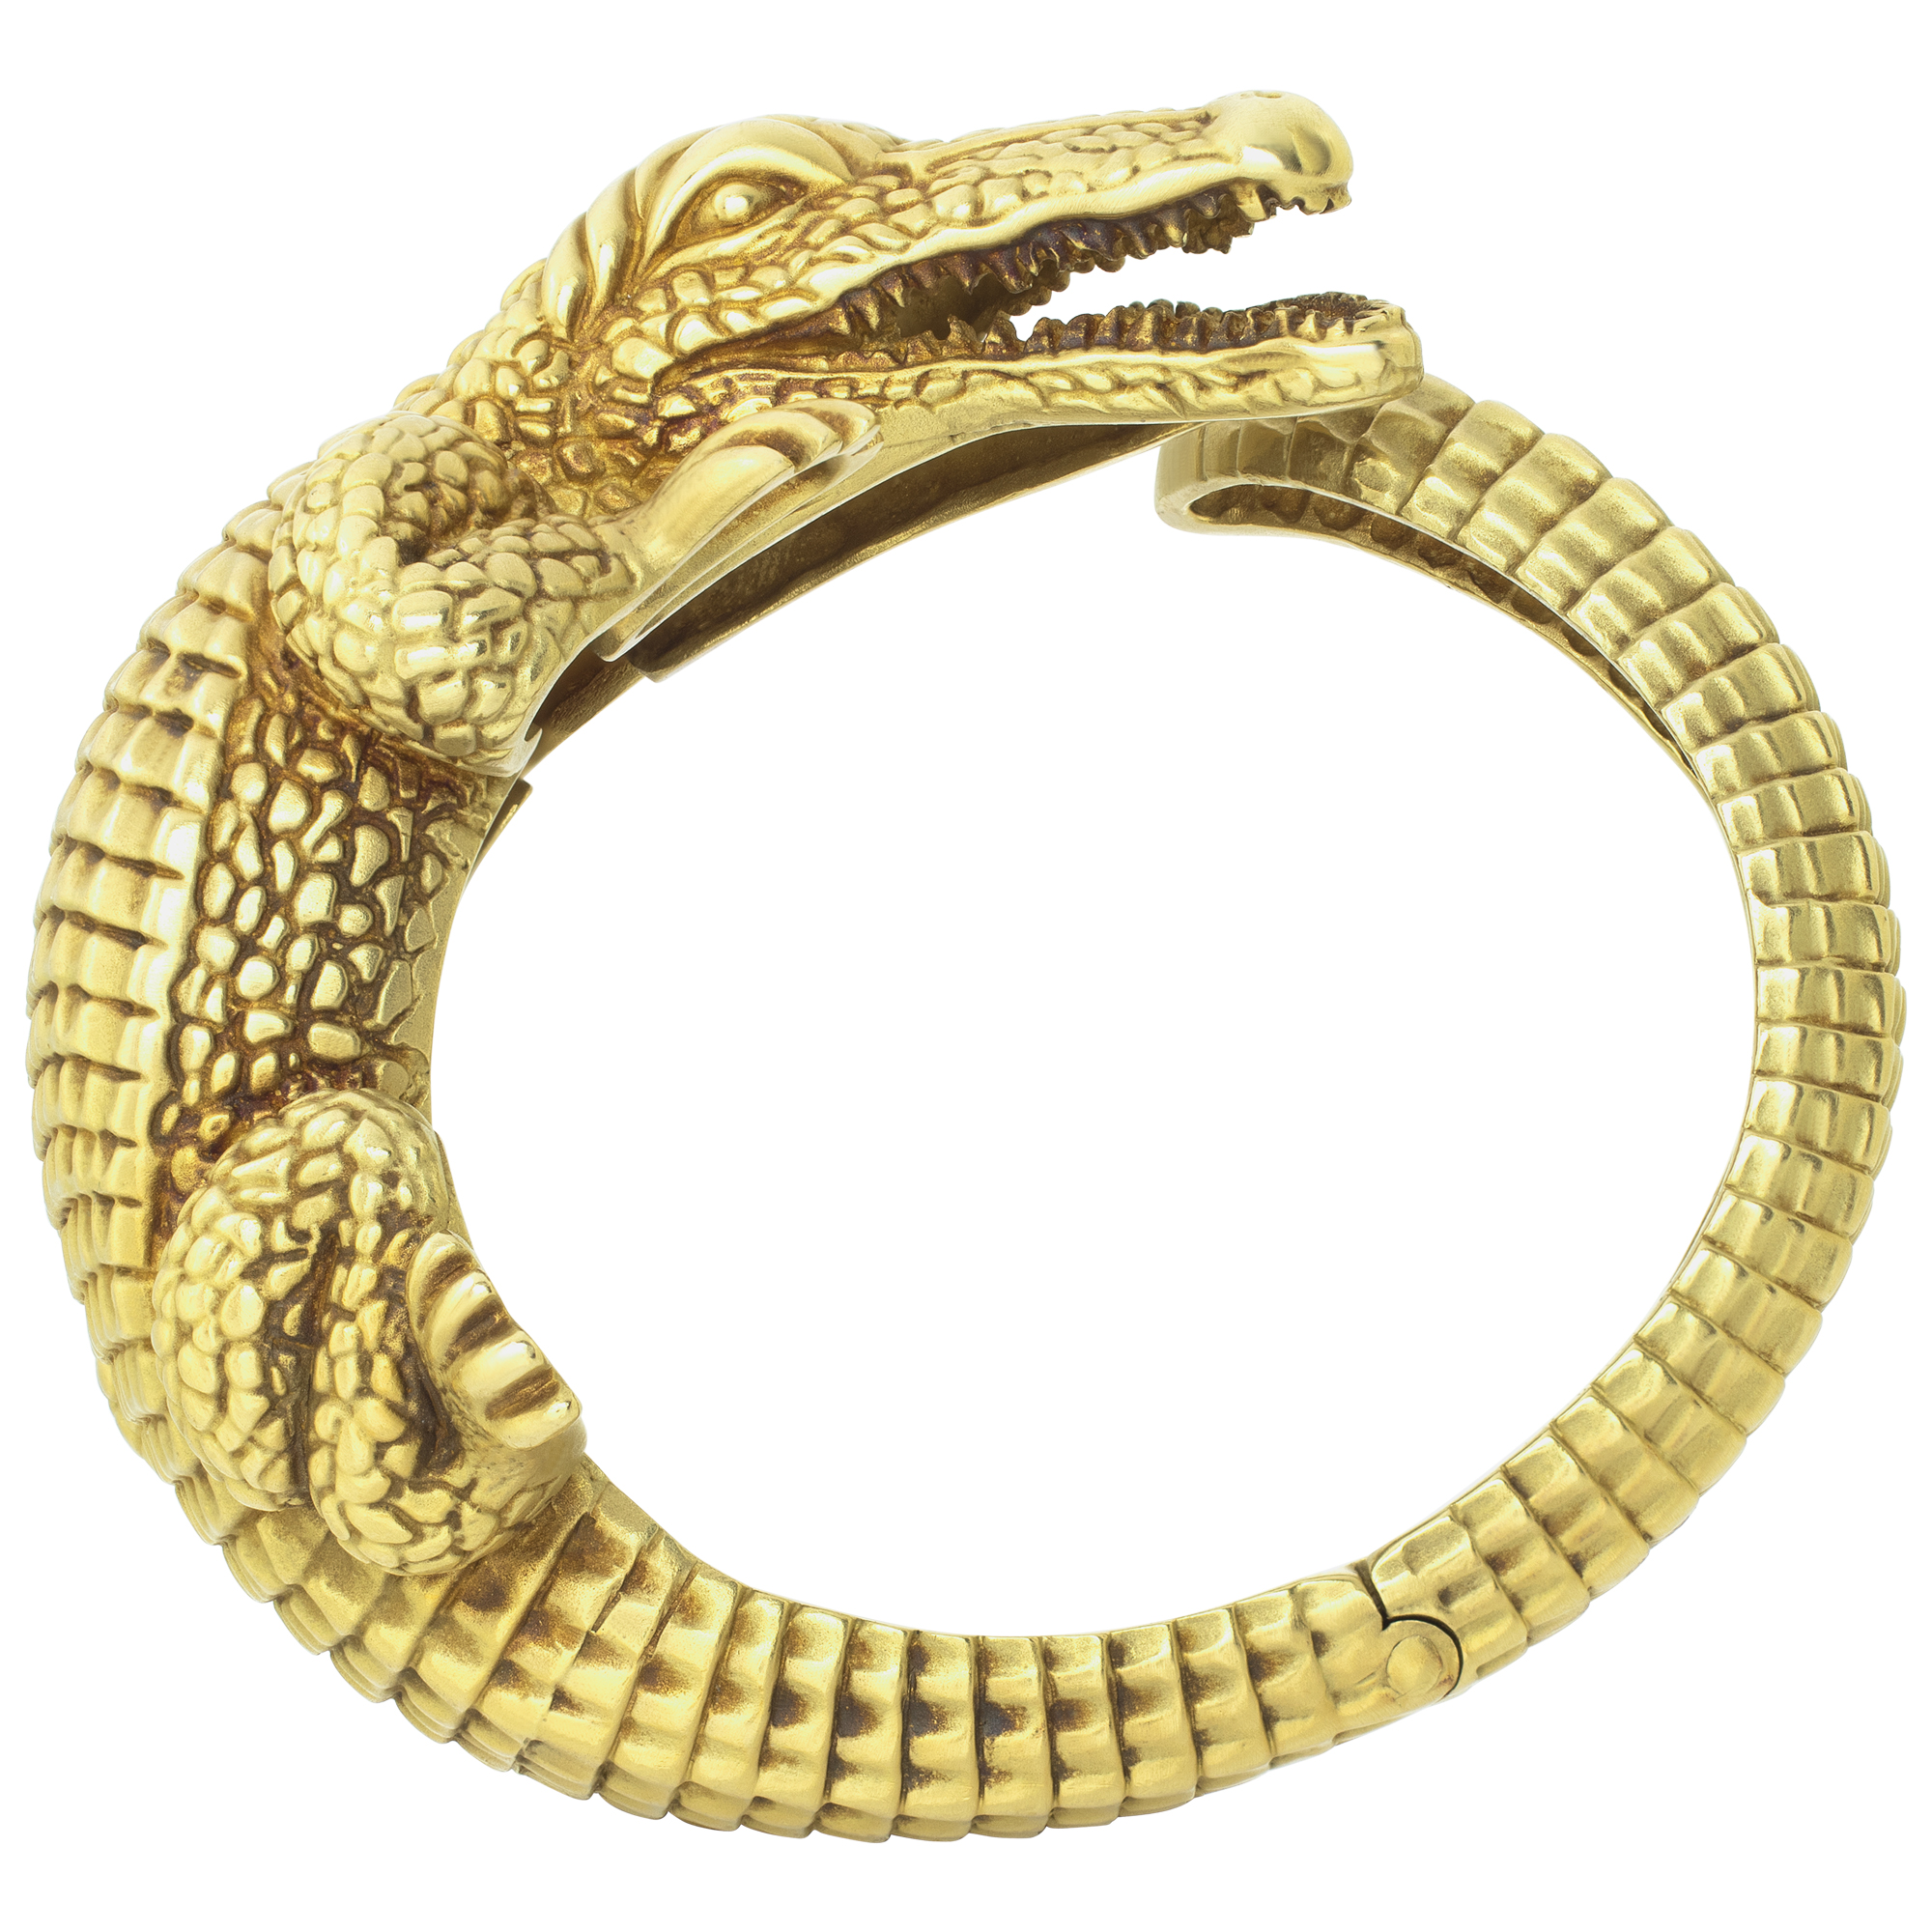 Barry Kieselstein Cord Alligator Cuff Bracelet in 18k yellow gold